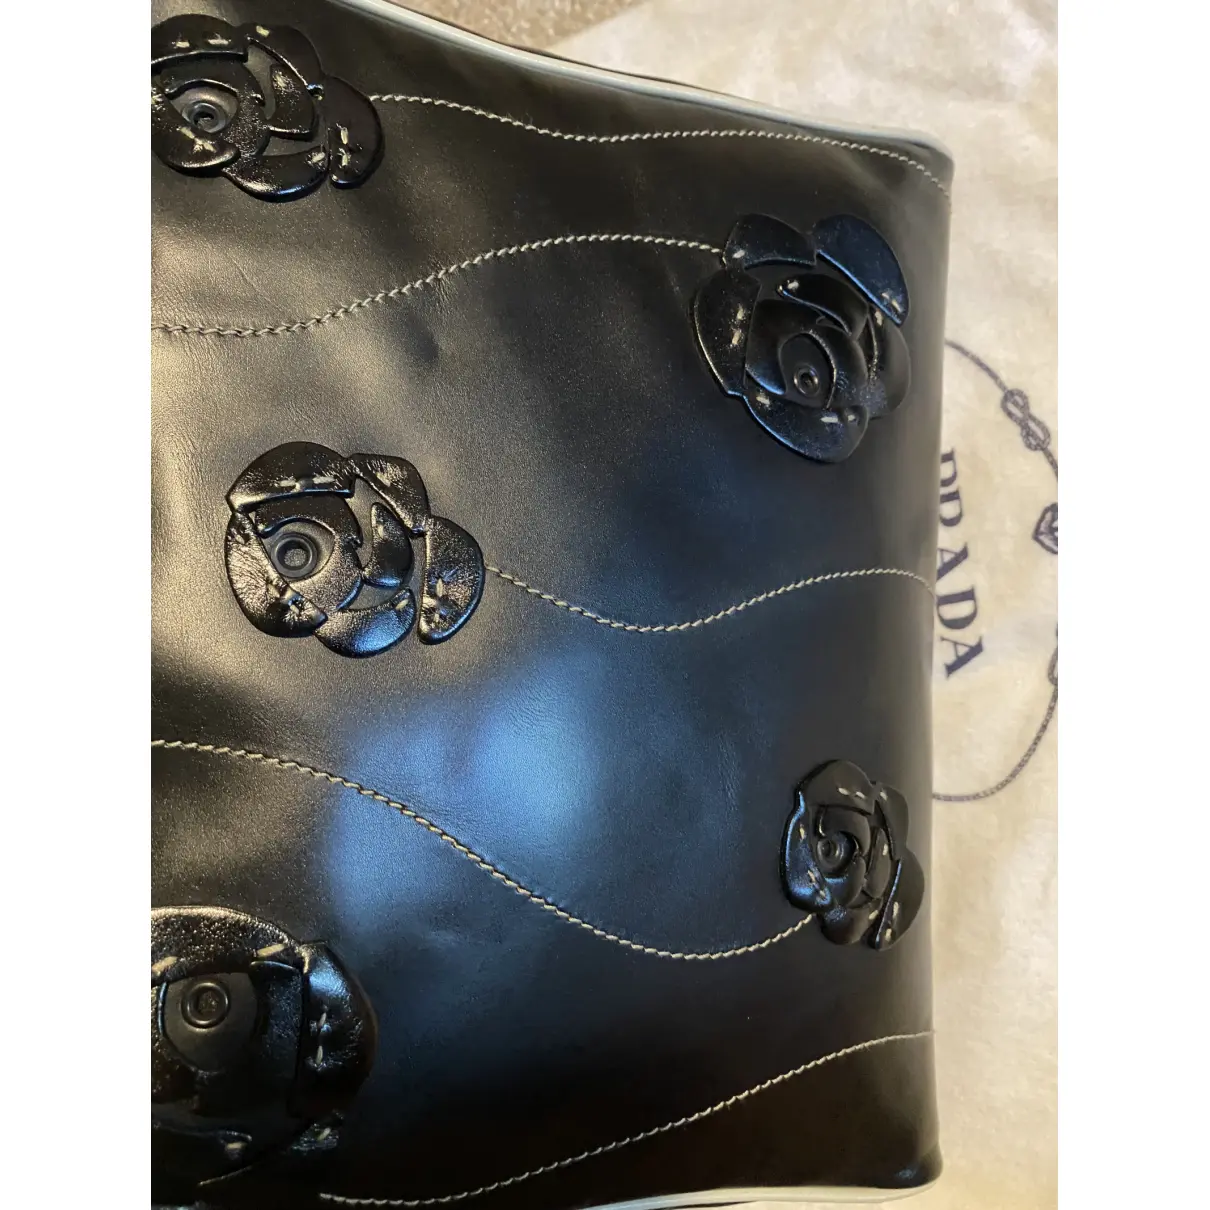 Leather handbag Prada - Vintage